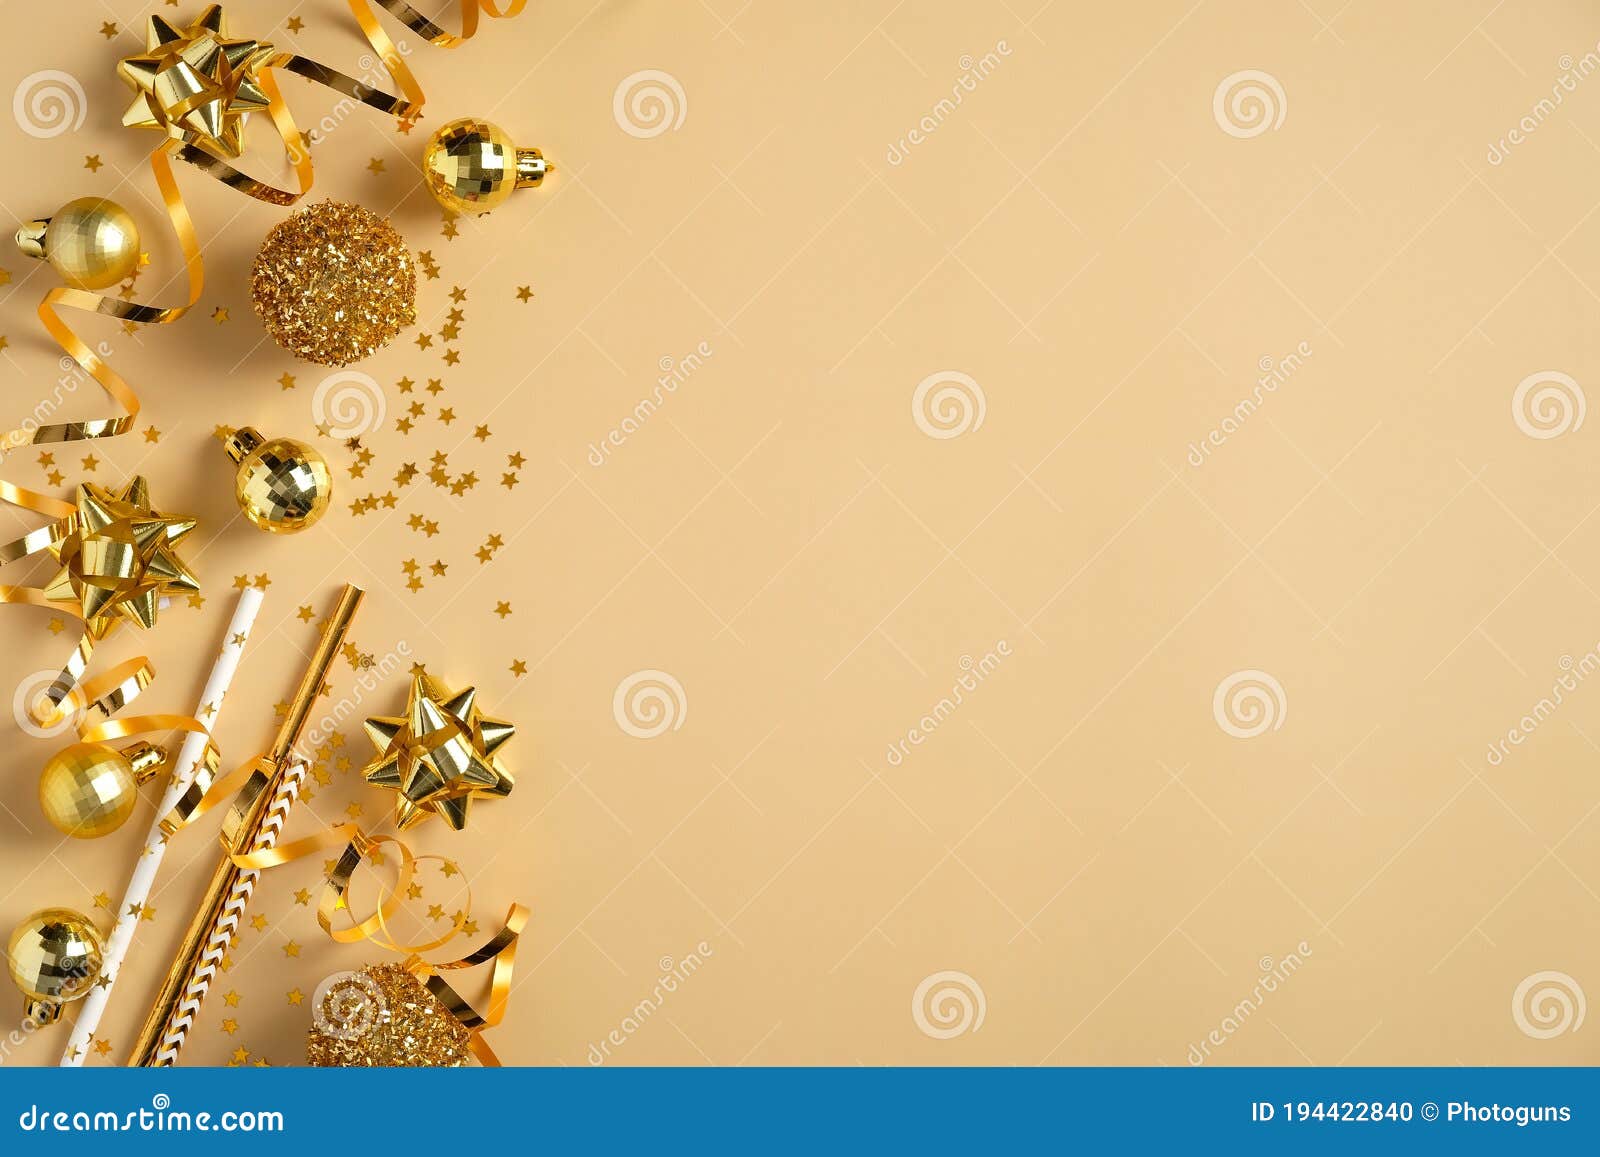 Giáng Sinh là thời điểm cuối năm đầy ý nghĩa. Hãy đón chào mùa lễ hội đầy màu sắc với thiết kế thiệp mời Giáng Sinh nền vàng phẳng thiết kế độc đáo và tuyệt vời. Hãy xem qua hình ảnh minh họa để cảm nhận sự ấm áp của mùa lễ hội.